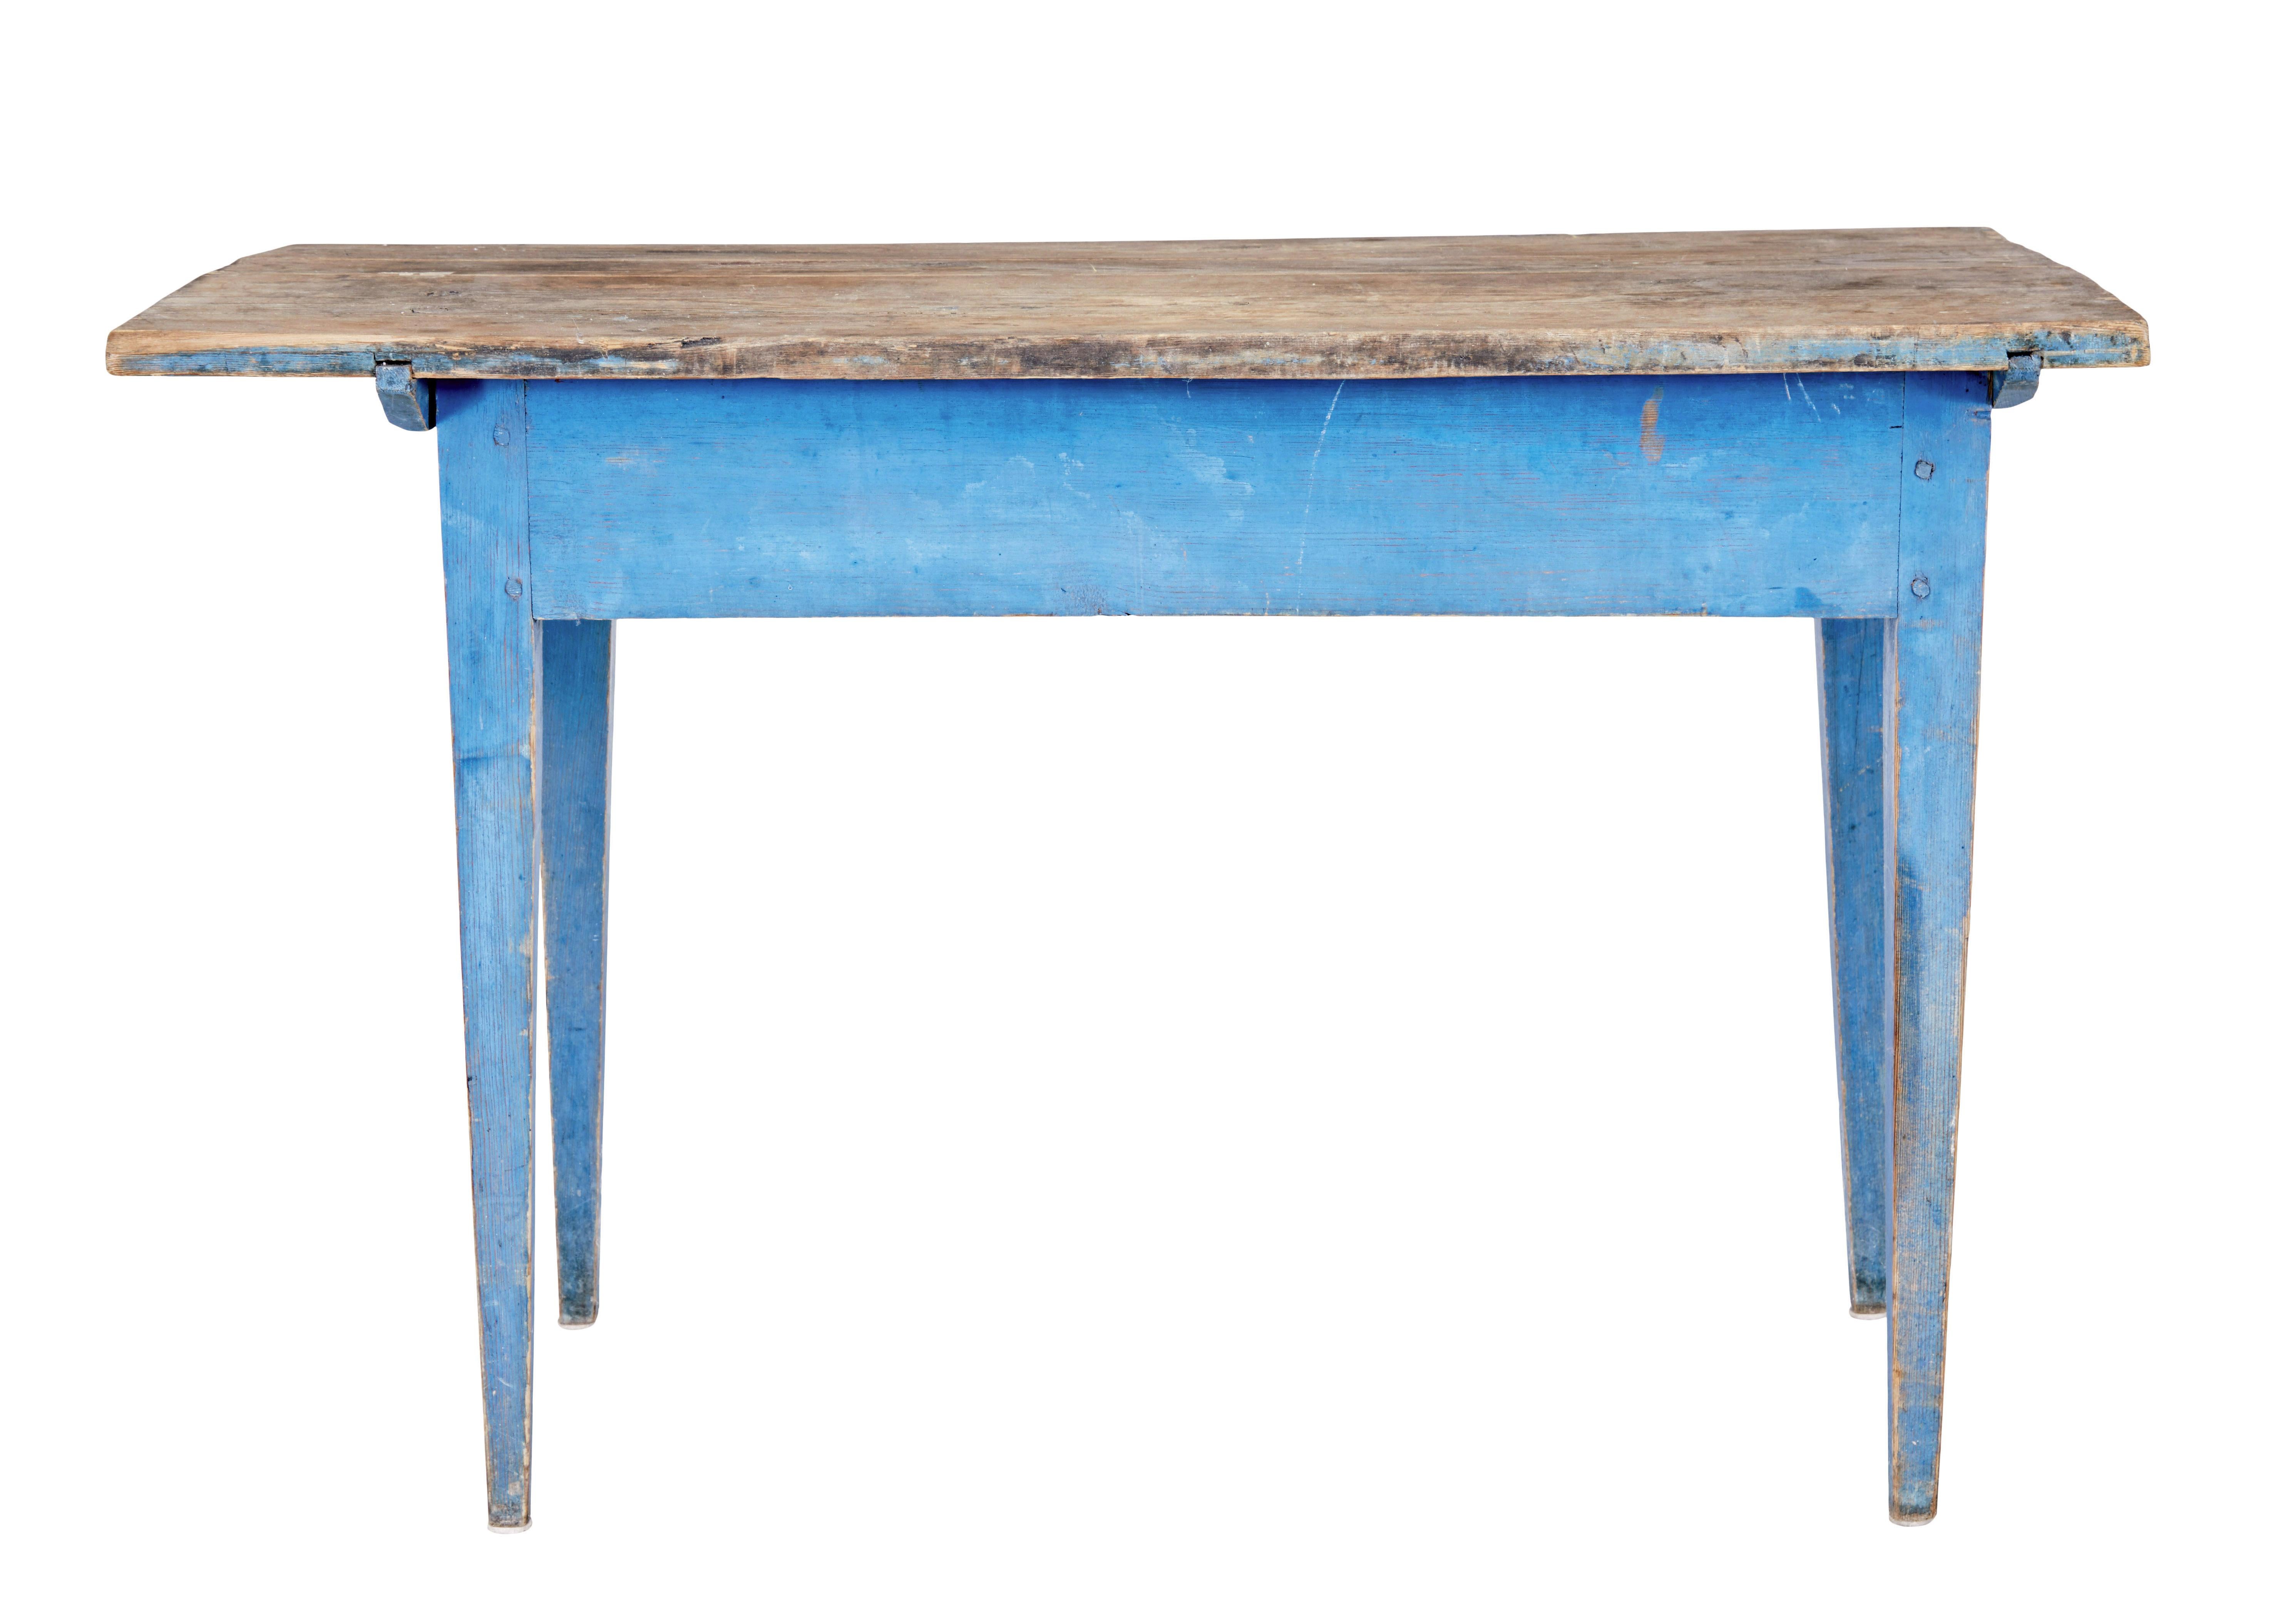 Rustikaler Beistelltisch aus bemalter Kiefer aus dem 19. Jahrhundert, um 1860.

Rustikaler Tisch aus schwedischer Kiefer mit original geschrubbter Kieferplatte und auffallend blau lackiertem Sockel.  Ideal für die Verwendung in einem Gartenzimmer